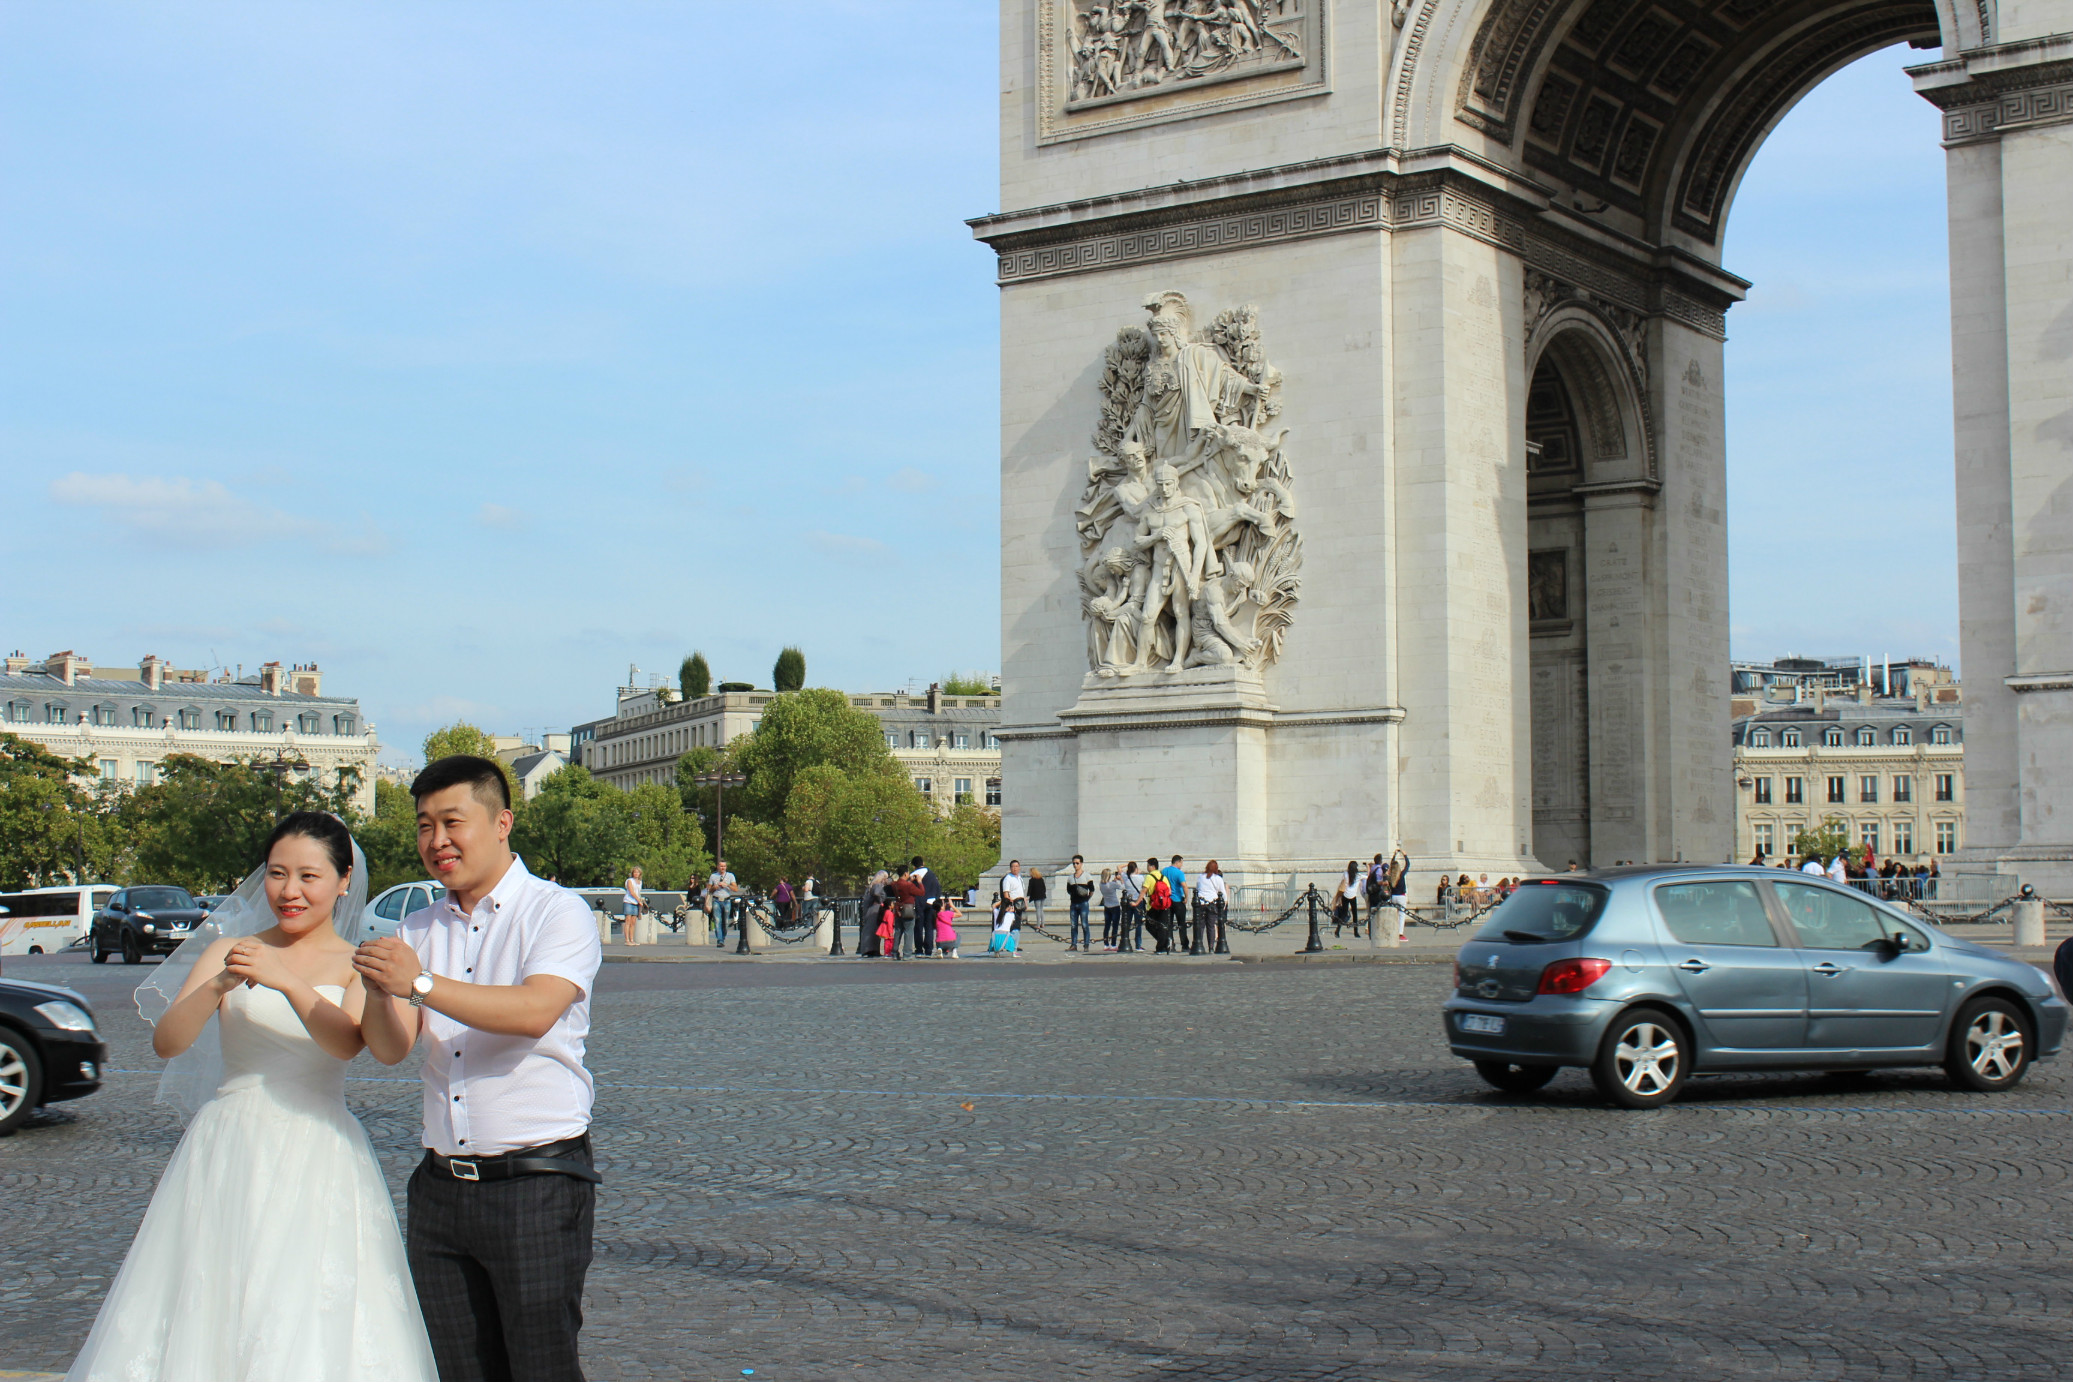 Triunfantes - no Arco do Triunfo, em Paris, na França. 